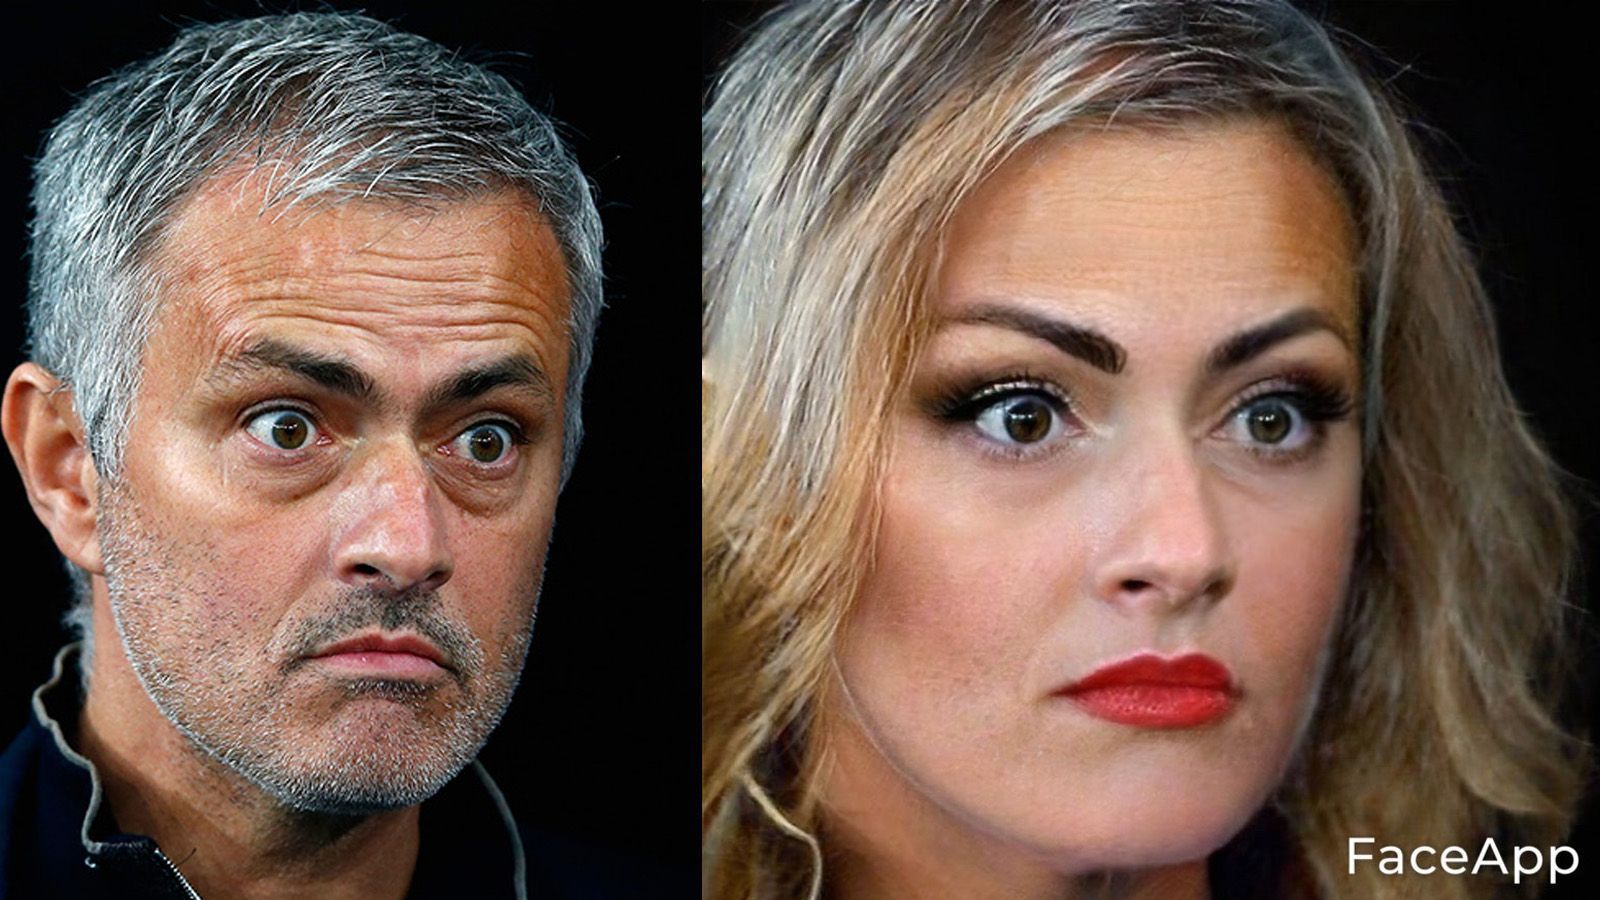 
                <strong>Jose Mourinho</strong><br>
                Was schaust du so? "Dumpfbacke" Mourinho wäre als Frau der personifizierte Blondinenwitz geworden. Wenn das die Option ist, dann will man doch lieber Jose sein.
              